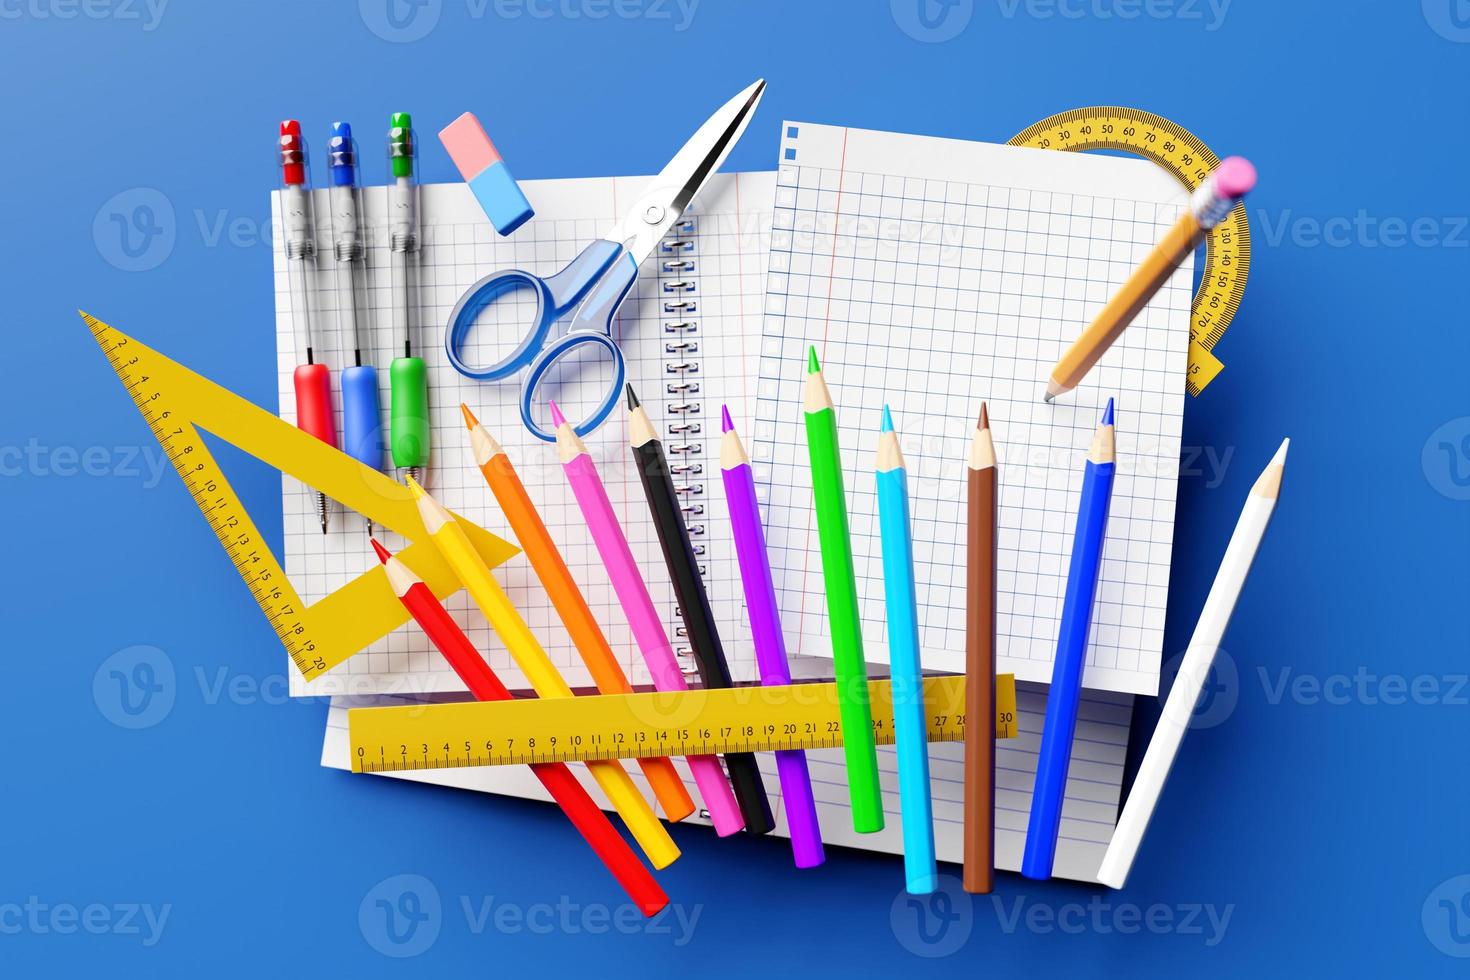 papelaria escolar. lápis de cor, canetas de tinta colorida, lápis comum com elástico vermelho, réguas, tesouras e folhas de caderno em branco sobre fundo branco. ilustração 3D. foto